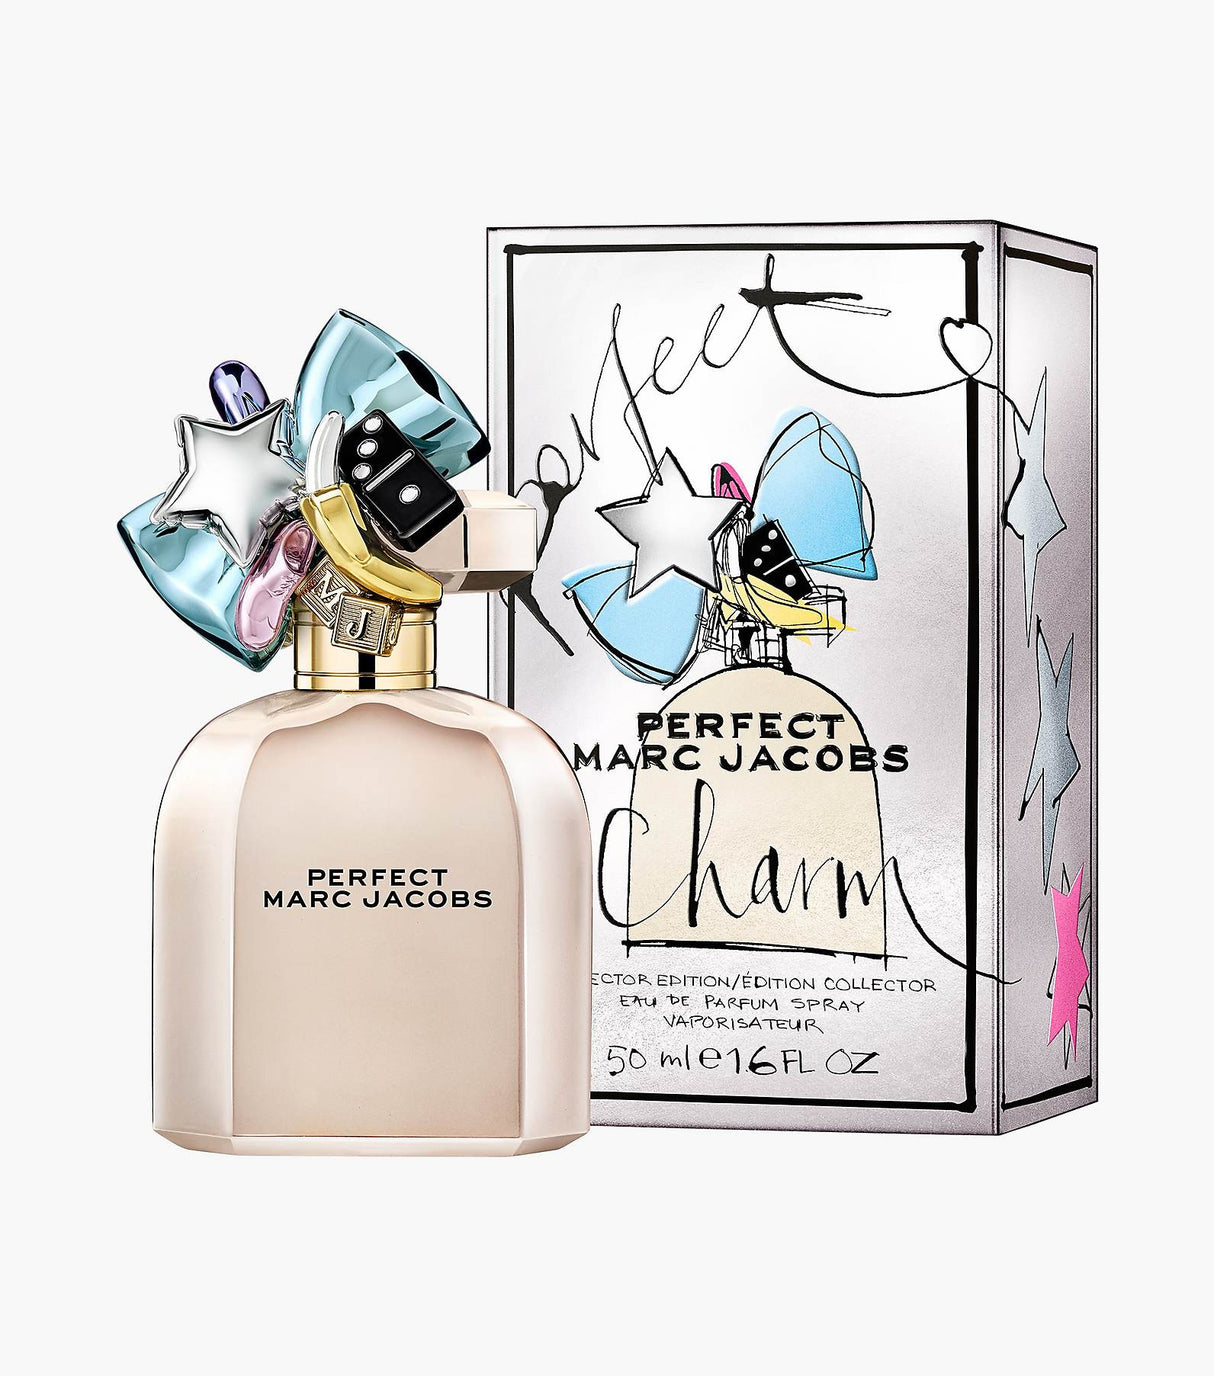 Marc Jacobs Perfect Collector Edition Eau De Parfum